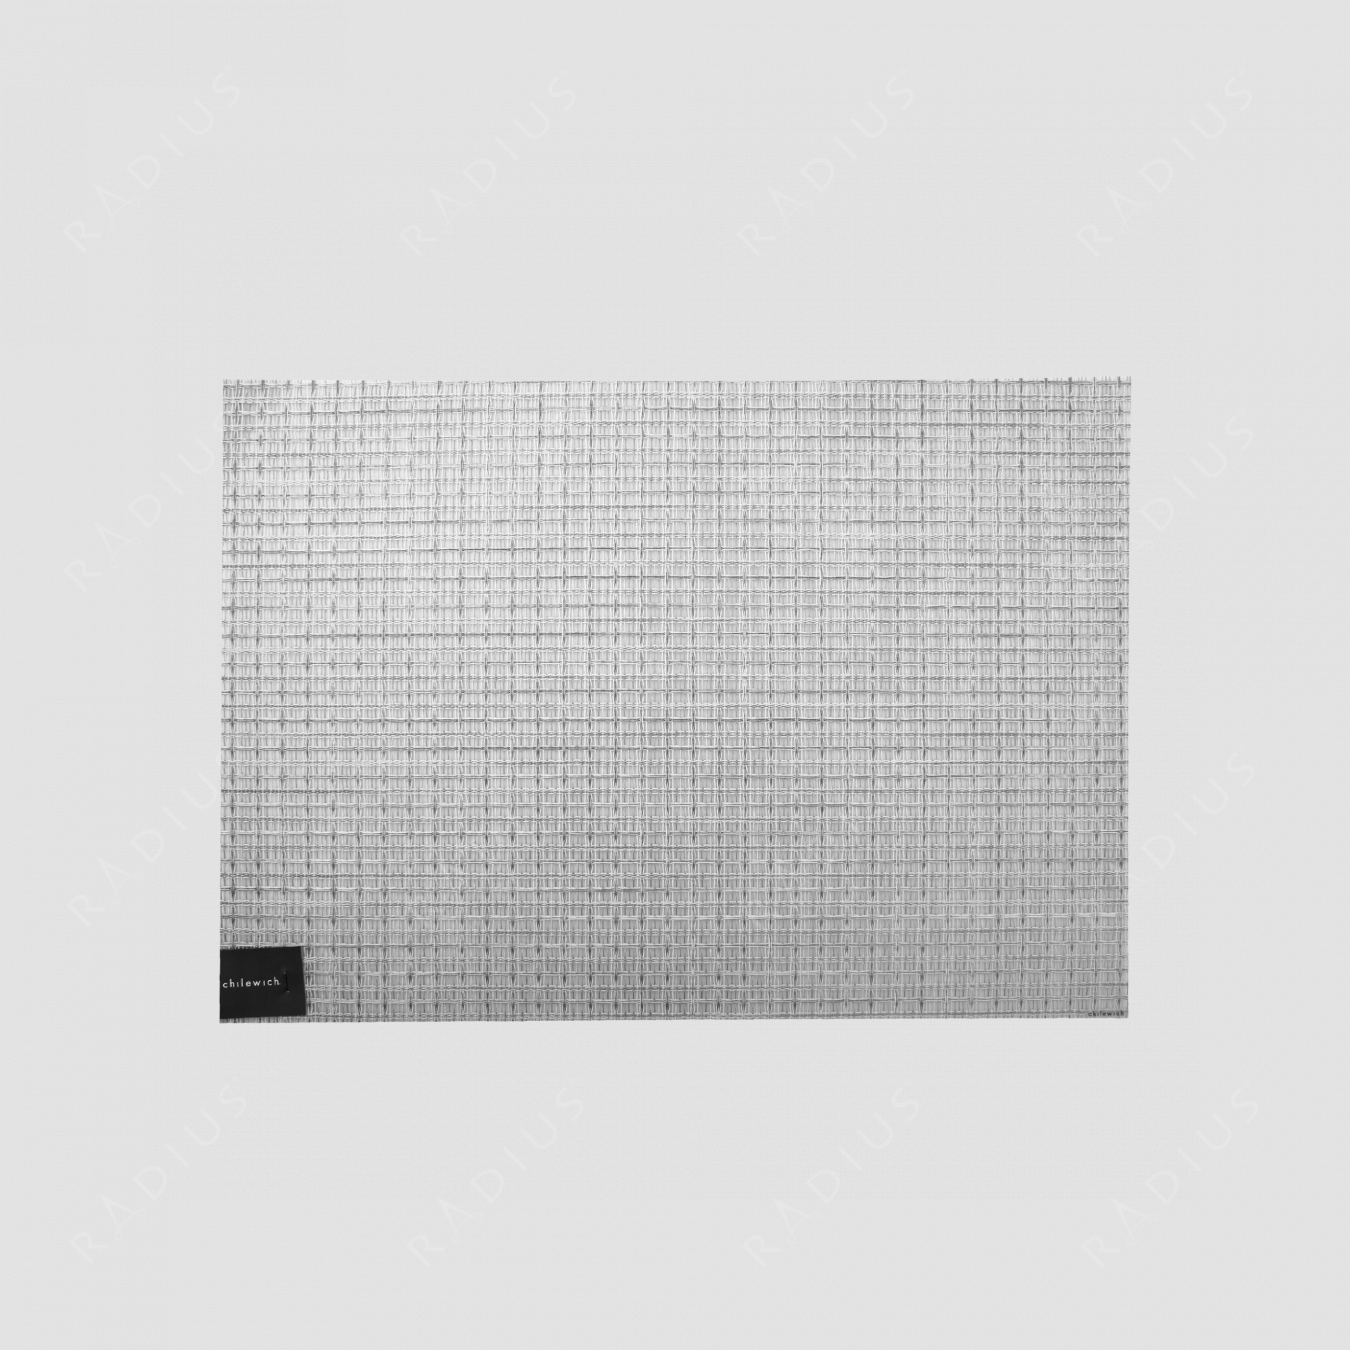 Салфетка подстановочная, жаккардовое плетение, винил, (36х48), Dove, серия Thistle, CHILEWICH, США